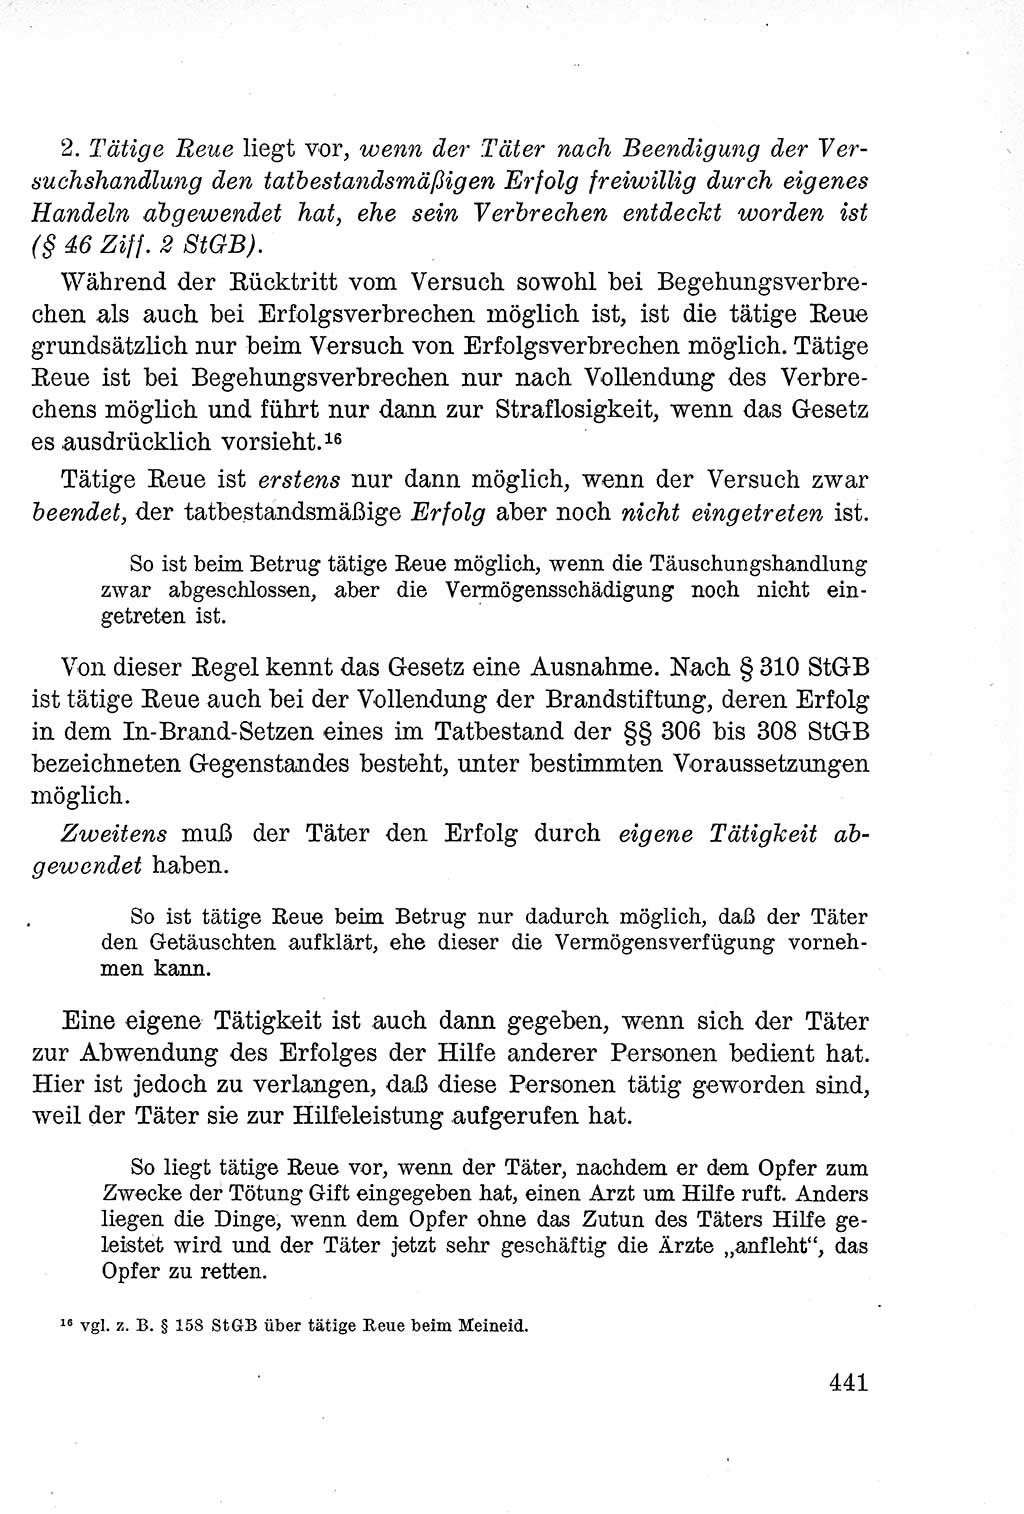 Lehrbuch des Strafrechts der Deutschen Demokratischen Republik (DDR), Allgemeiner Teil 1957, Seite 441 (Lb. Strafr. DDR AT 1957, S. 441)